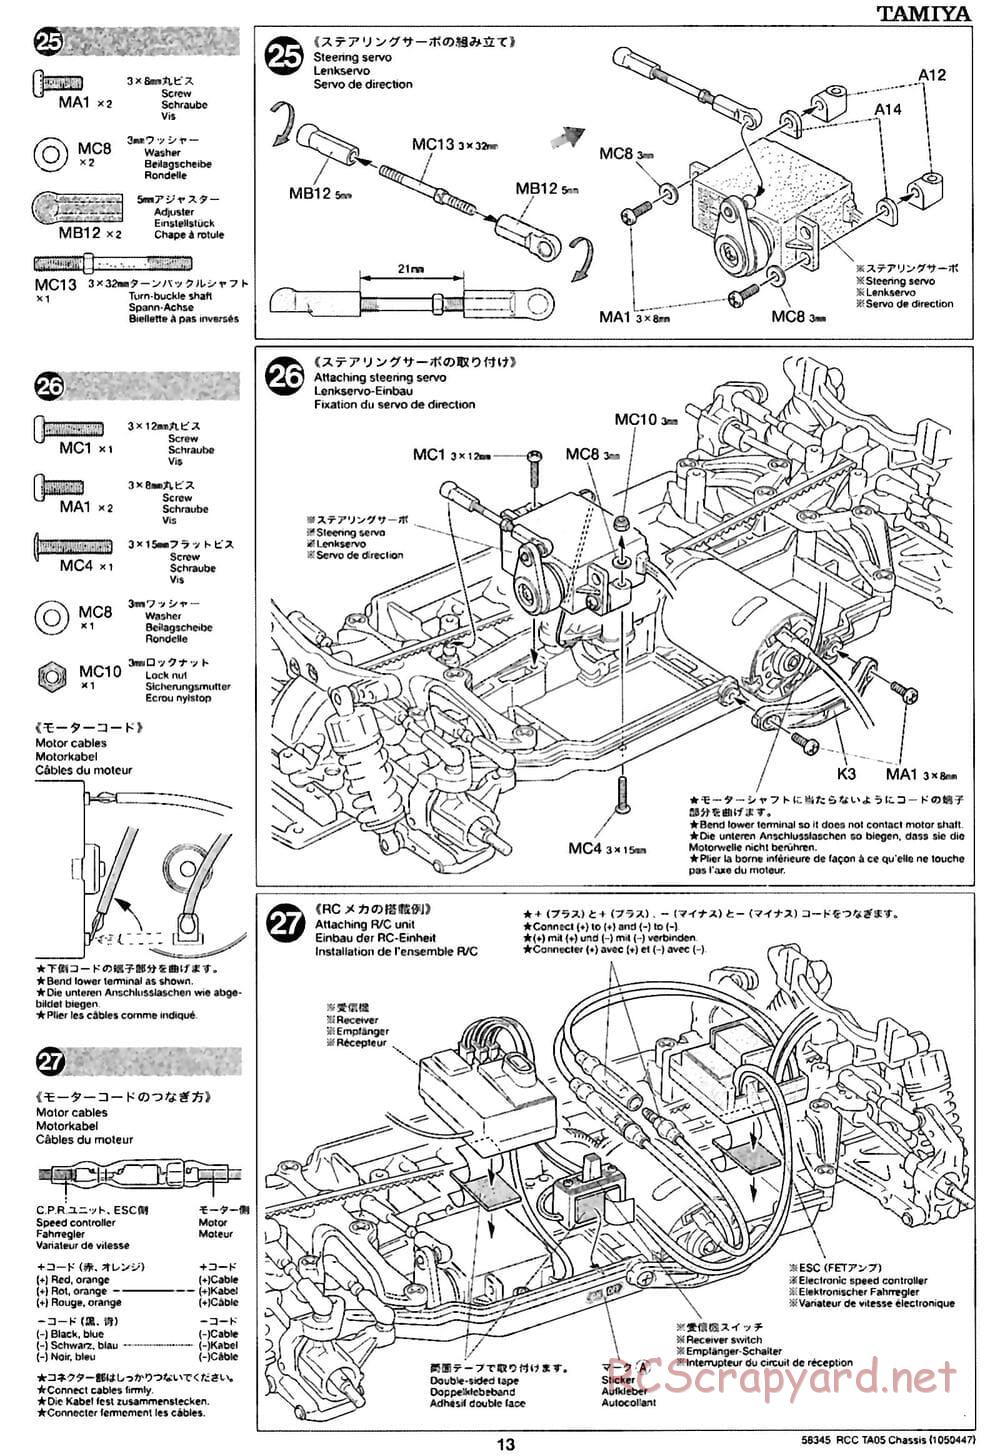 Tamiya - TA05 Chassis - Manual - Page 13